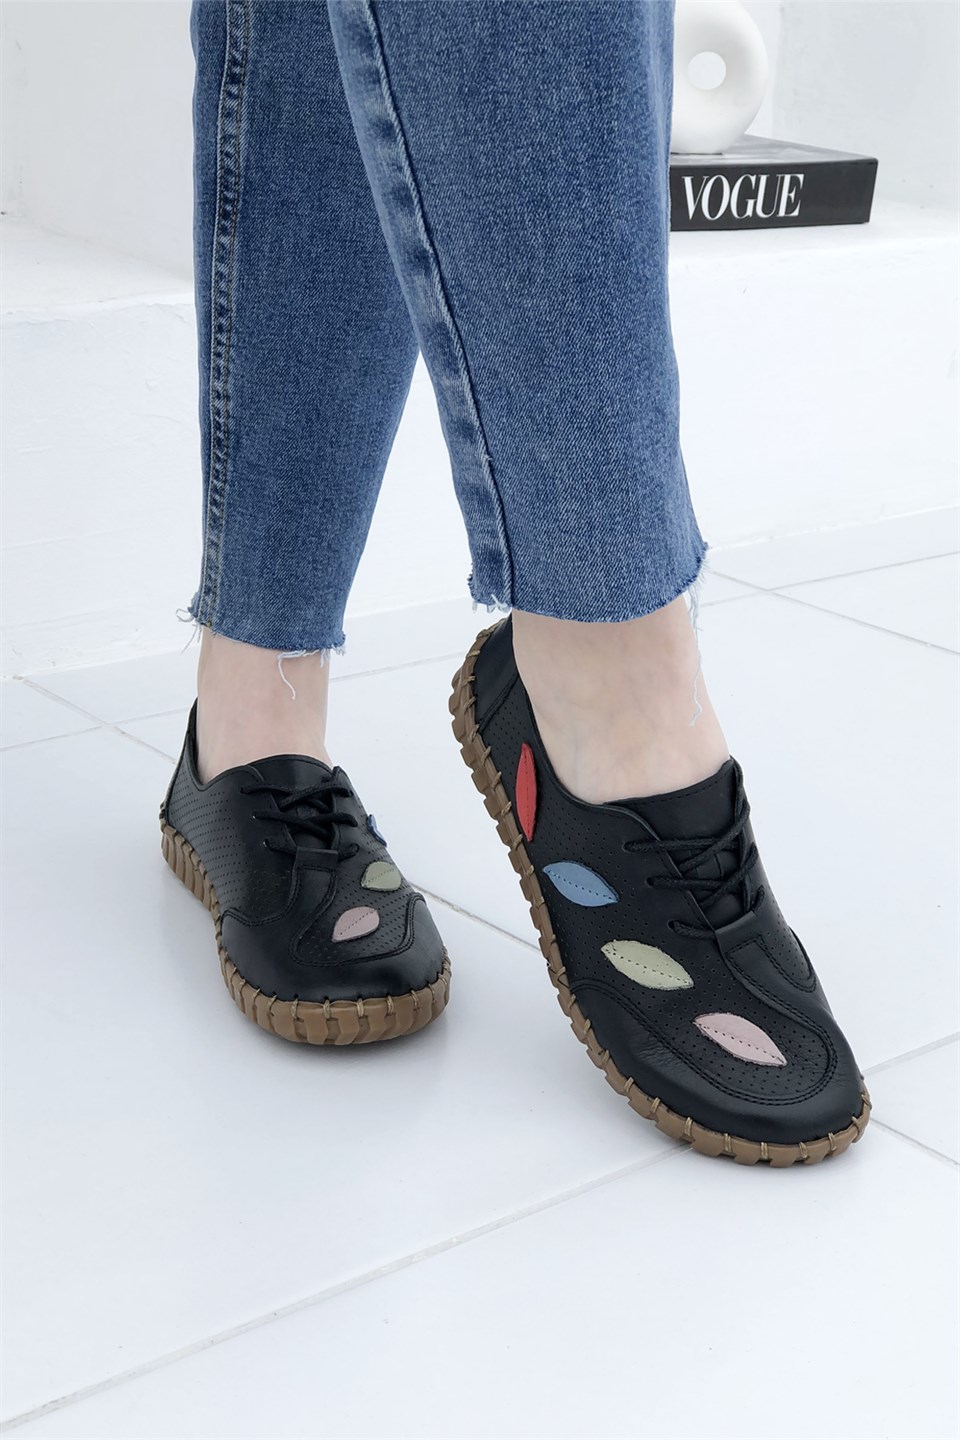 Cıtyzen Yaprak Desenli İç-Dış Hakiki Deri Kadın Ayakkabı Siyah NB-671 |  Mybella Shoes